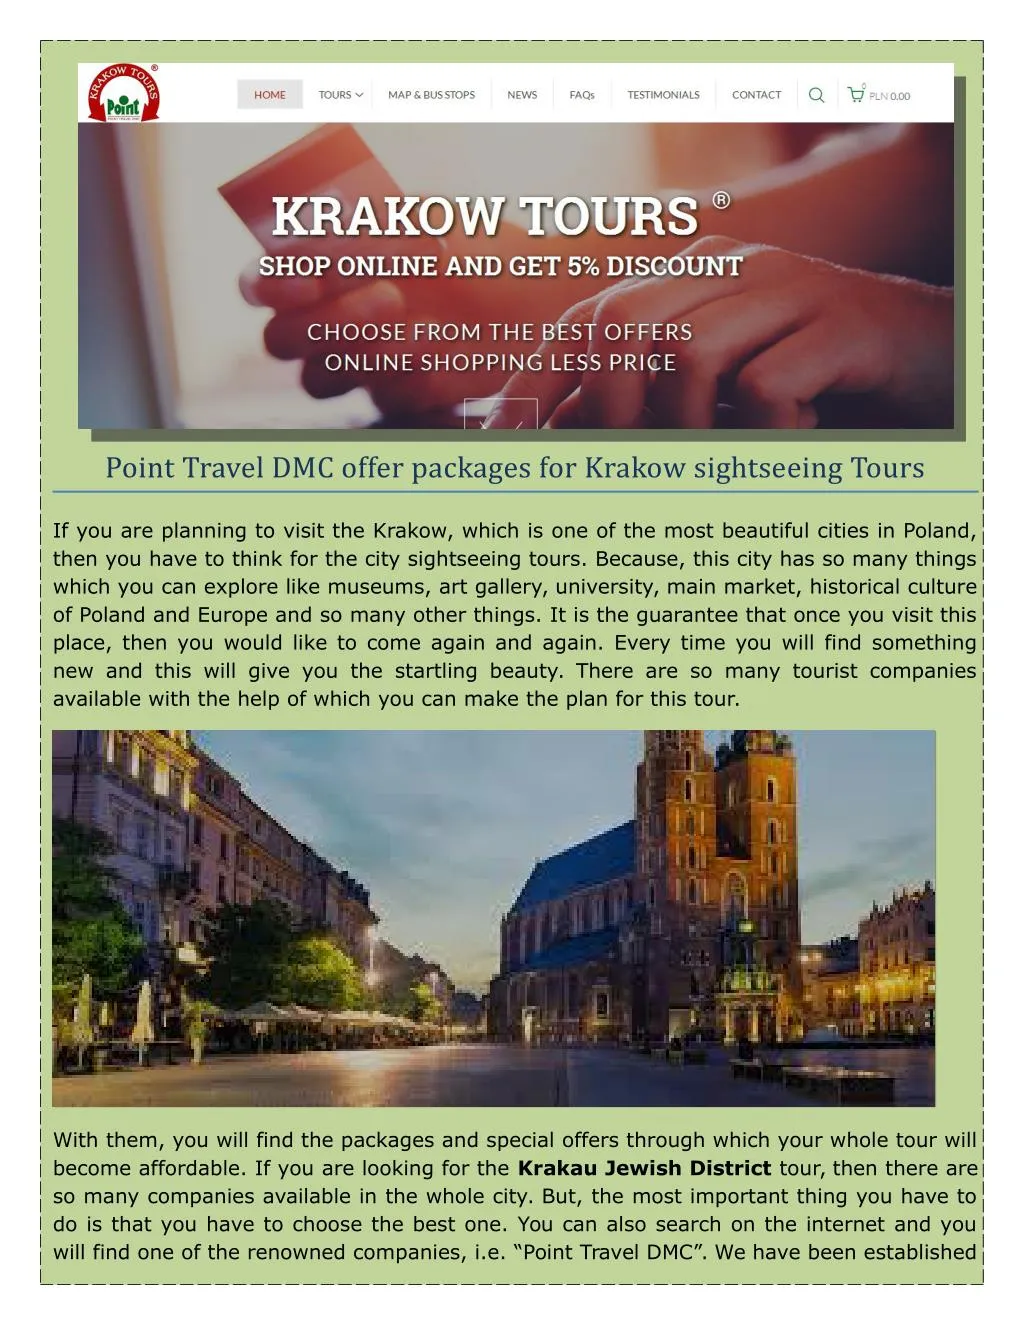 point travel dmc offer packages for krakow